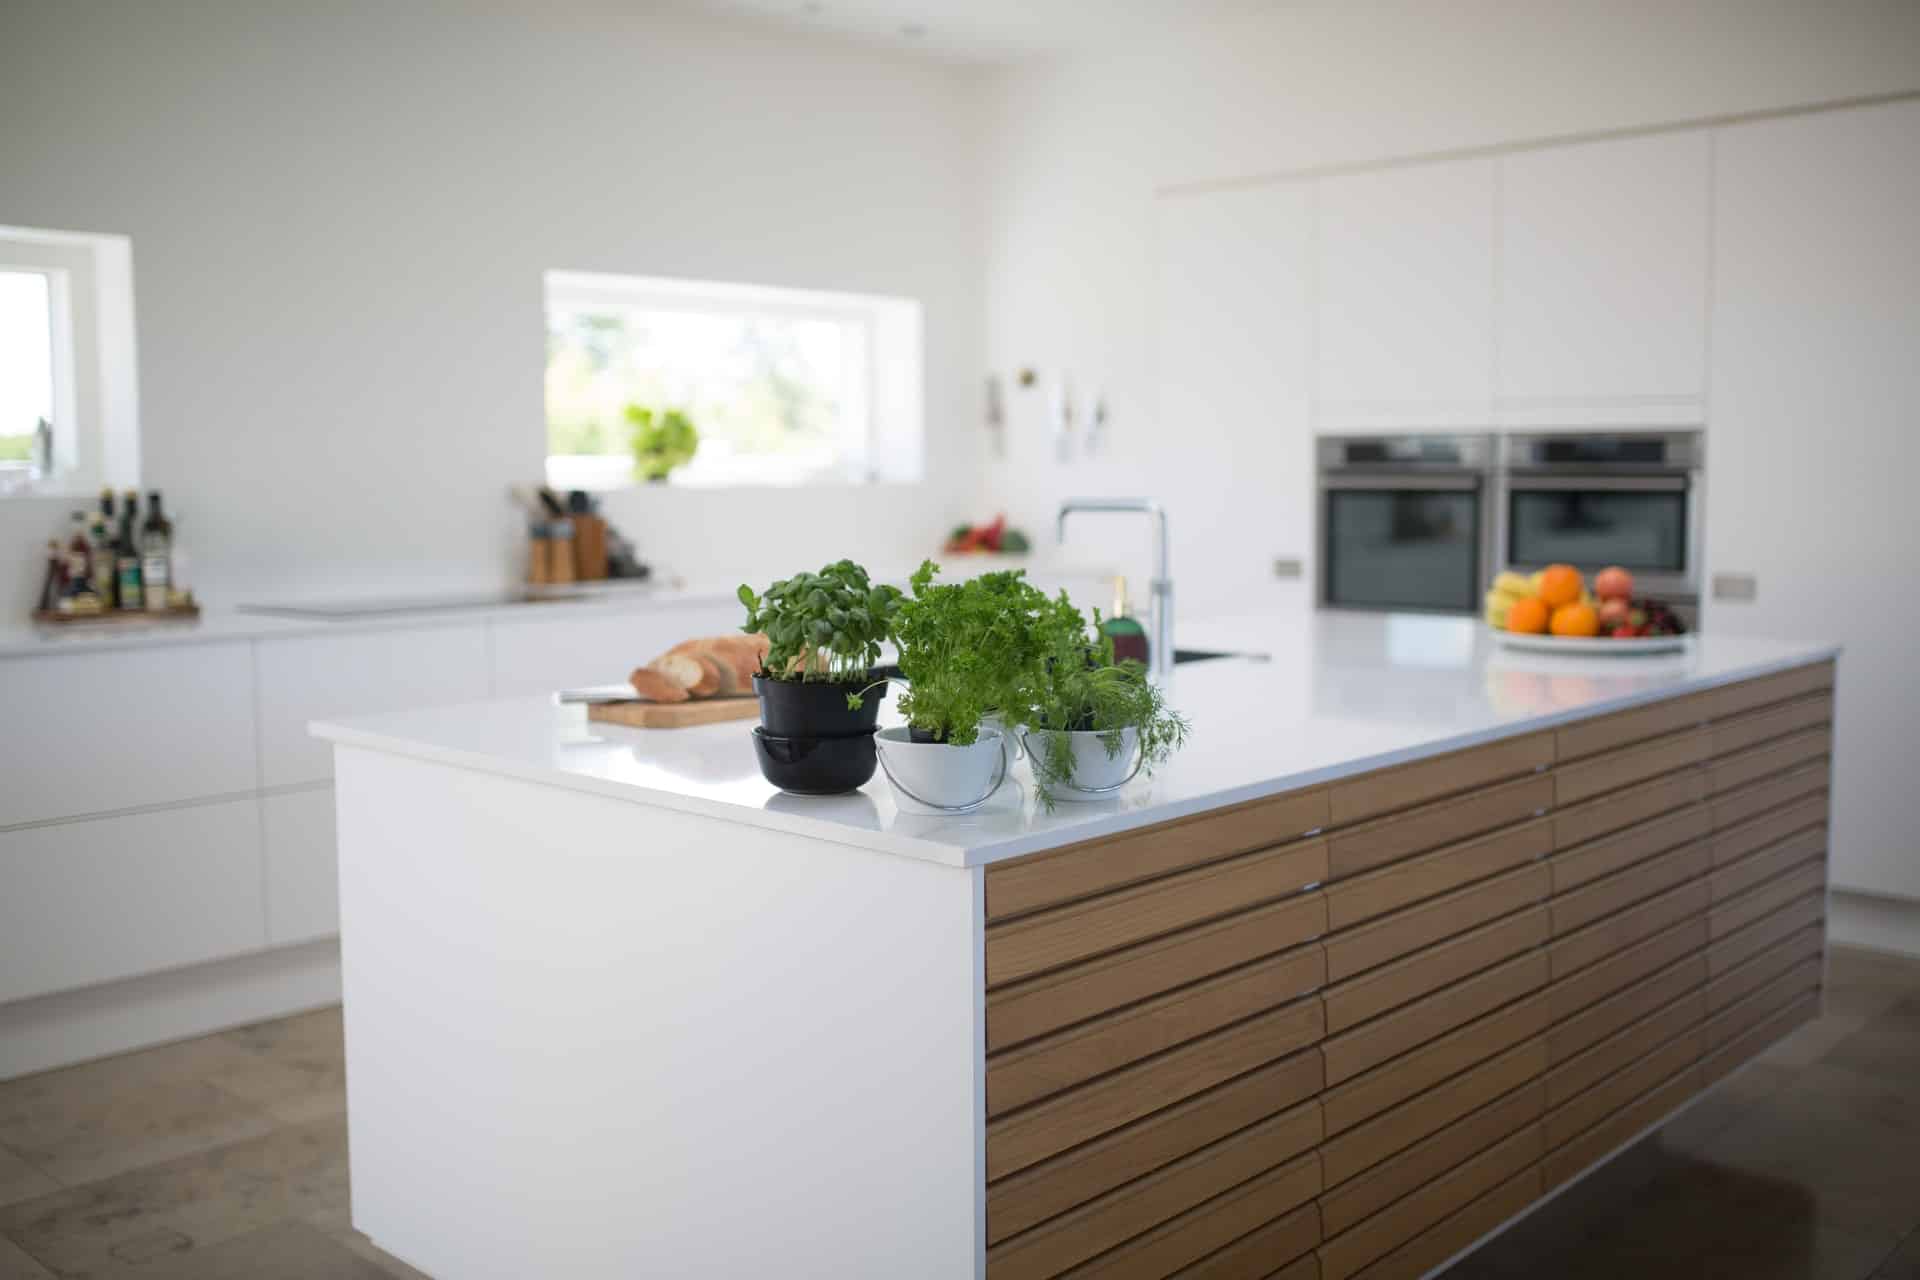 9 Gorgeous Kitchen Cabinet Hardware Ideas Hgtv